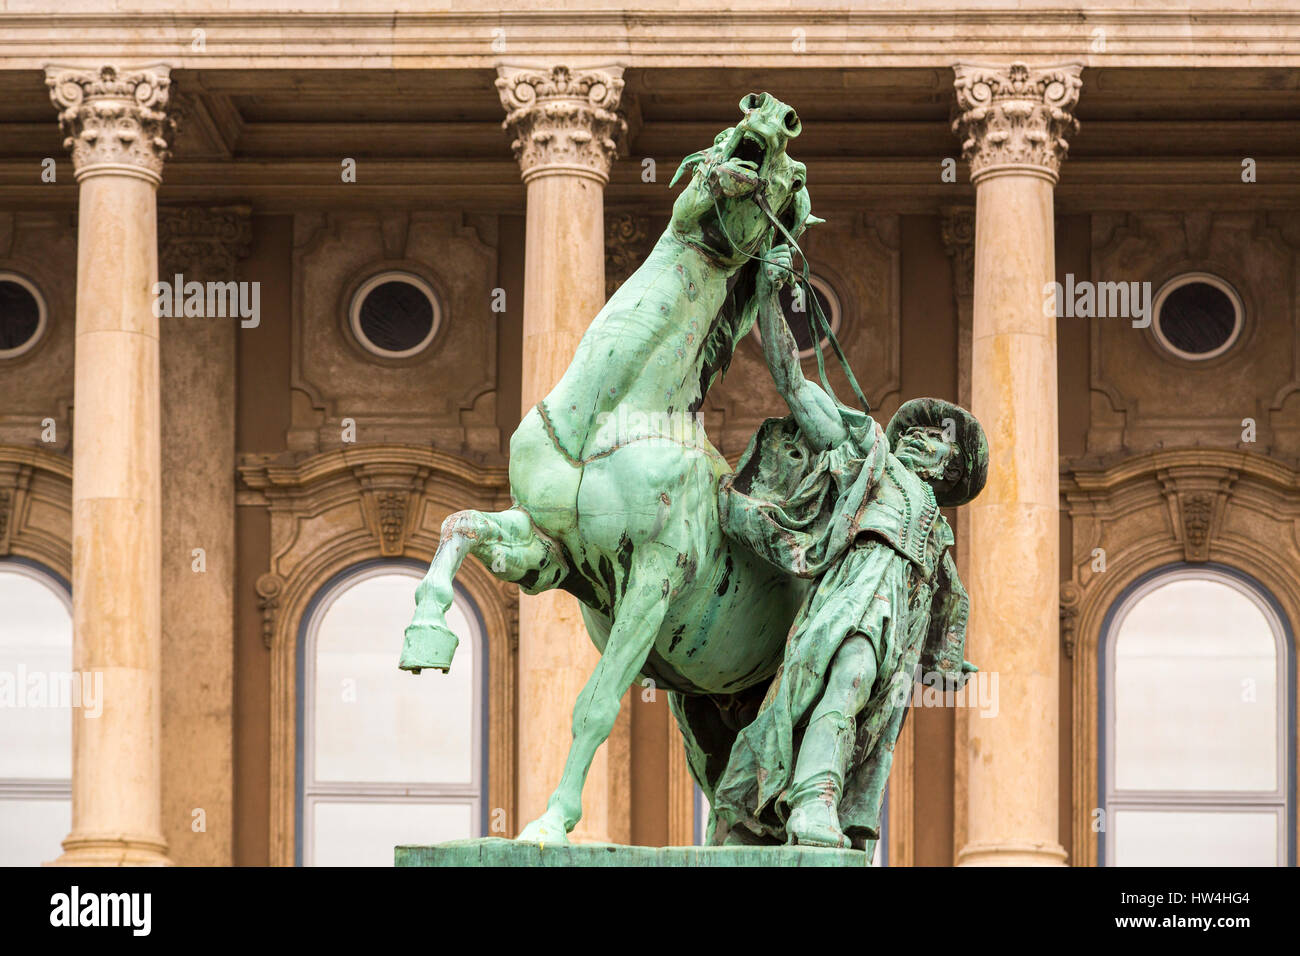 Pferdeskulptur, Stadtteil Buda Castle Hill. Budapest Ungarn, Südost-Europa Stockfoto